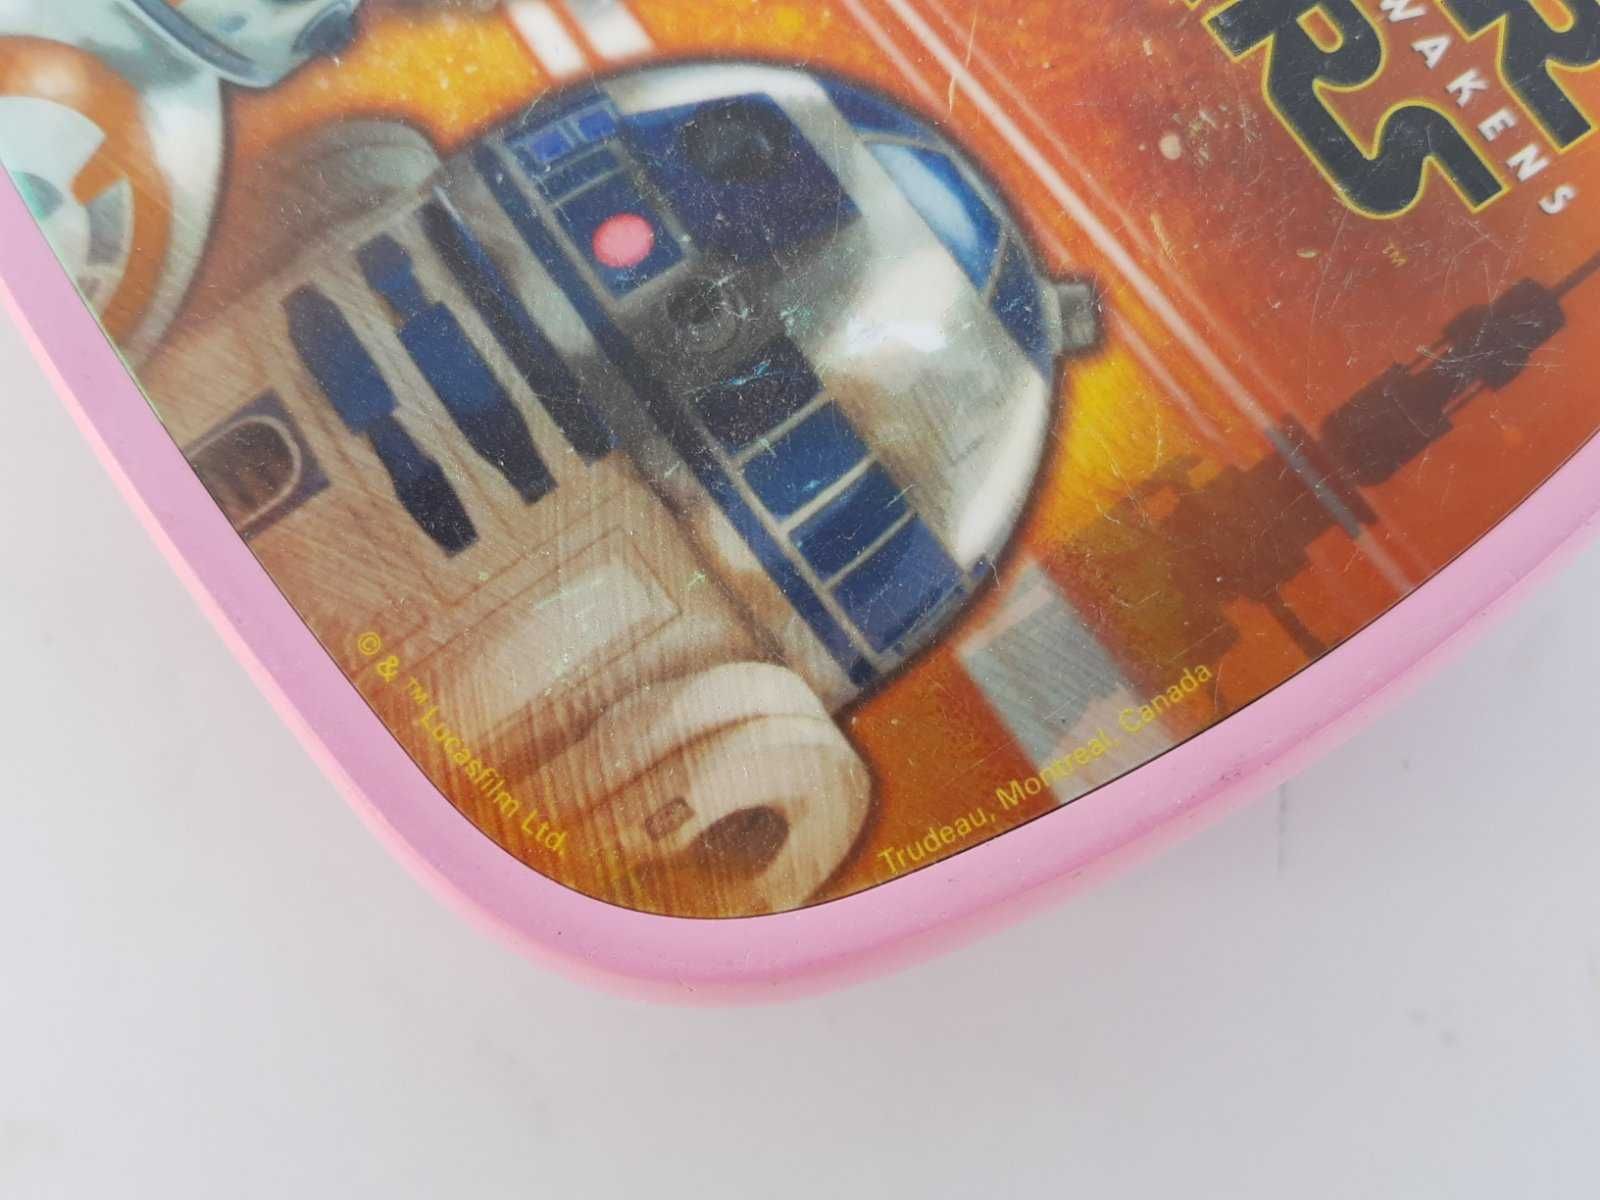 Колекционерска ретро кутия за храна с сюжет Star Wars